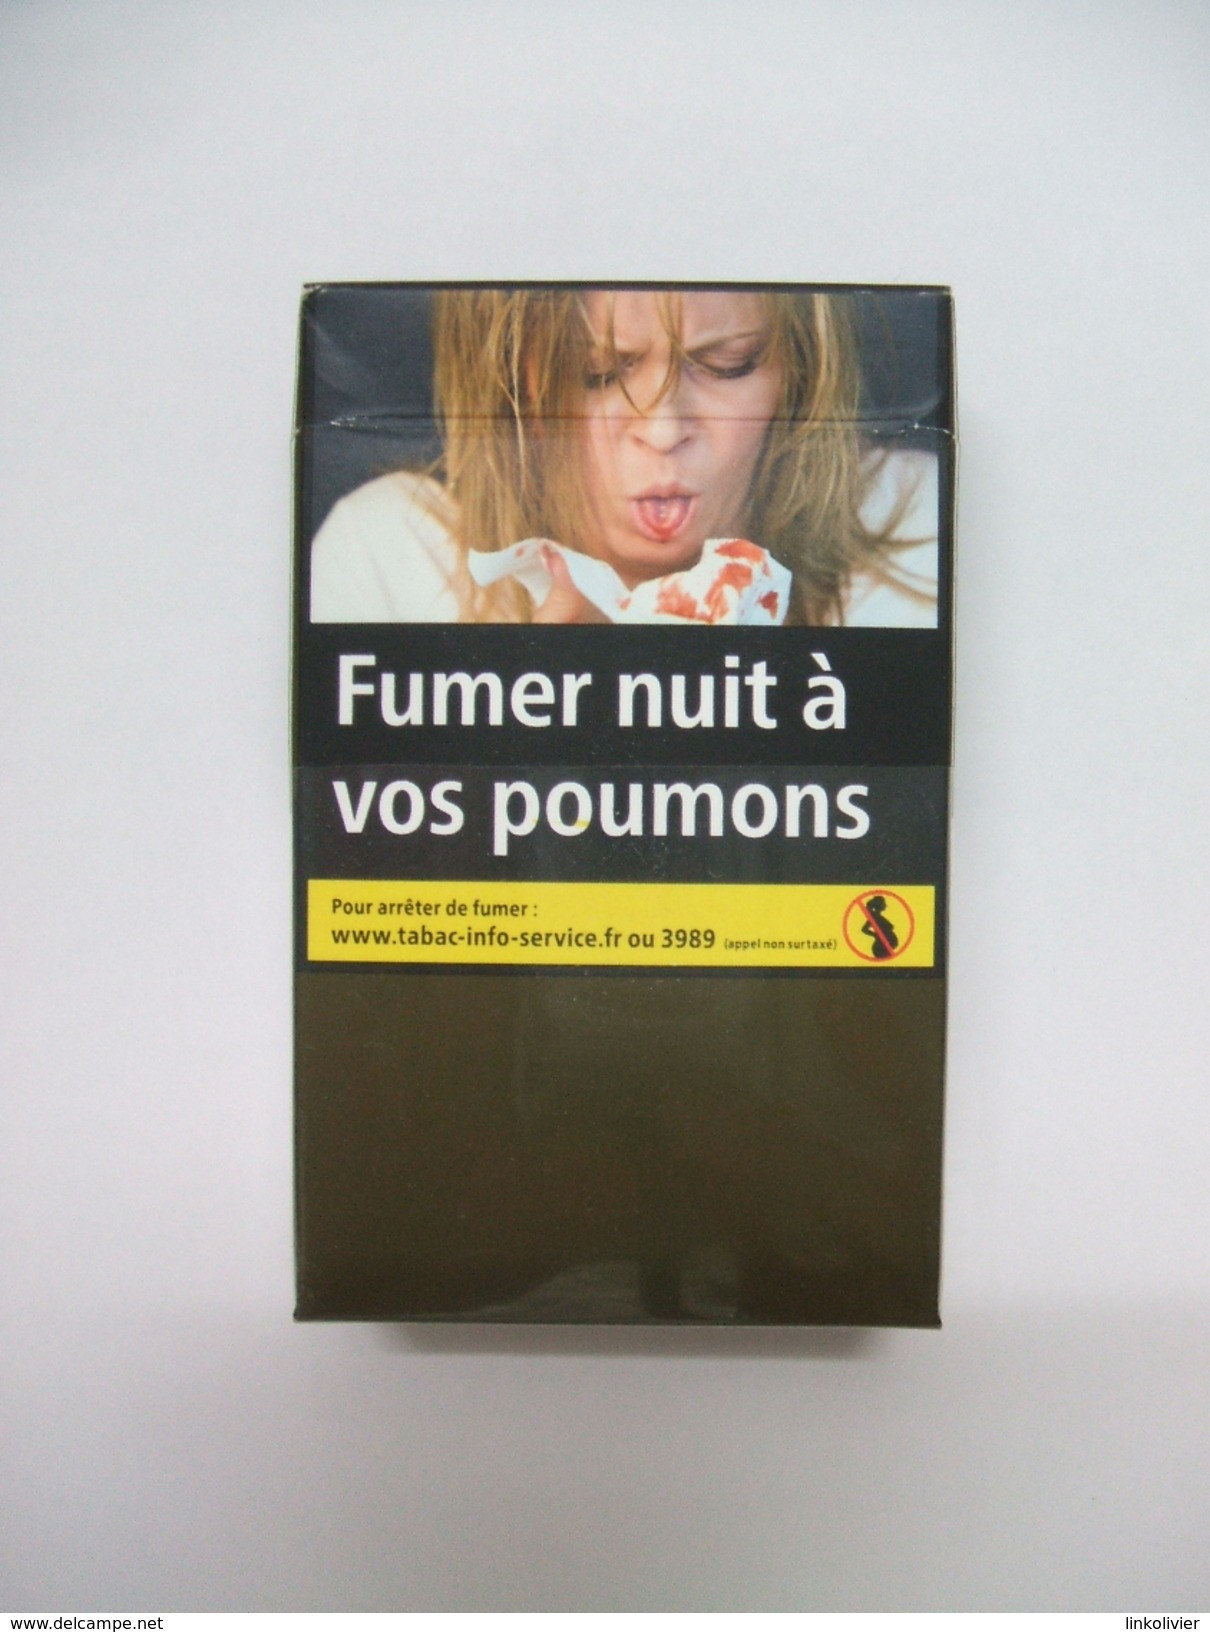 BOÎTE MARLBORO RED, étui à CIGARETTES Vide En Carton - Etuis à Cigarettes Vides